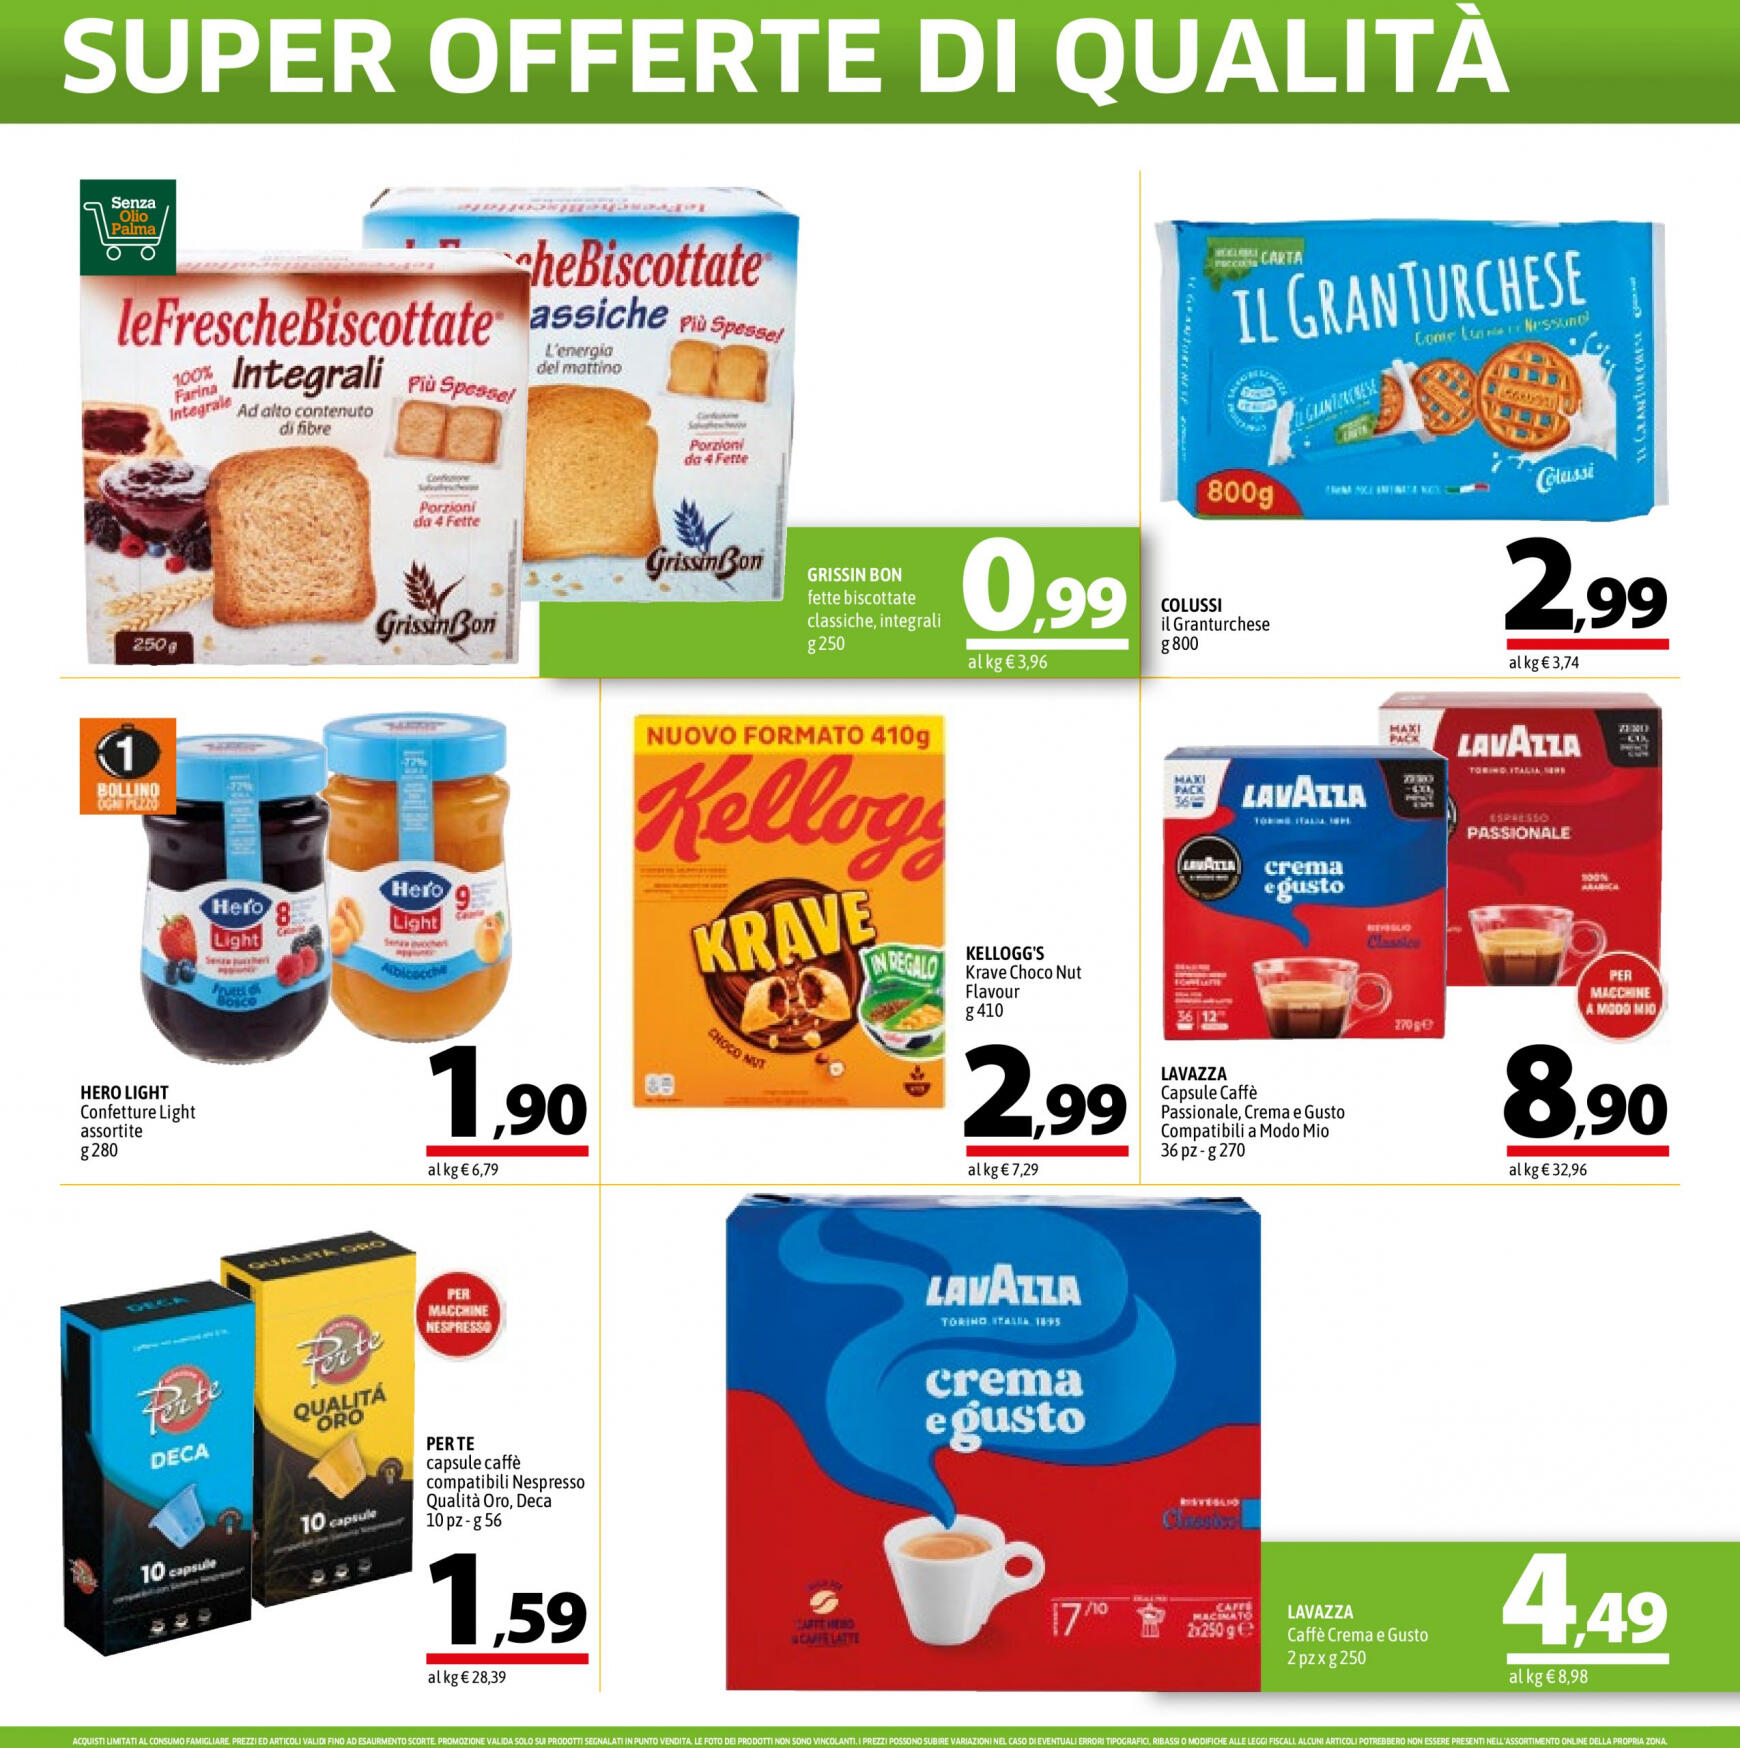 a-o - Nuovo volantino A&O - Super Offerte Di Qualita' 02.05. - 15.05. - page: 12